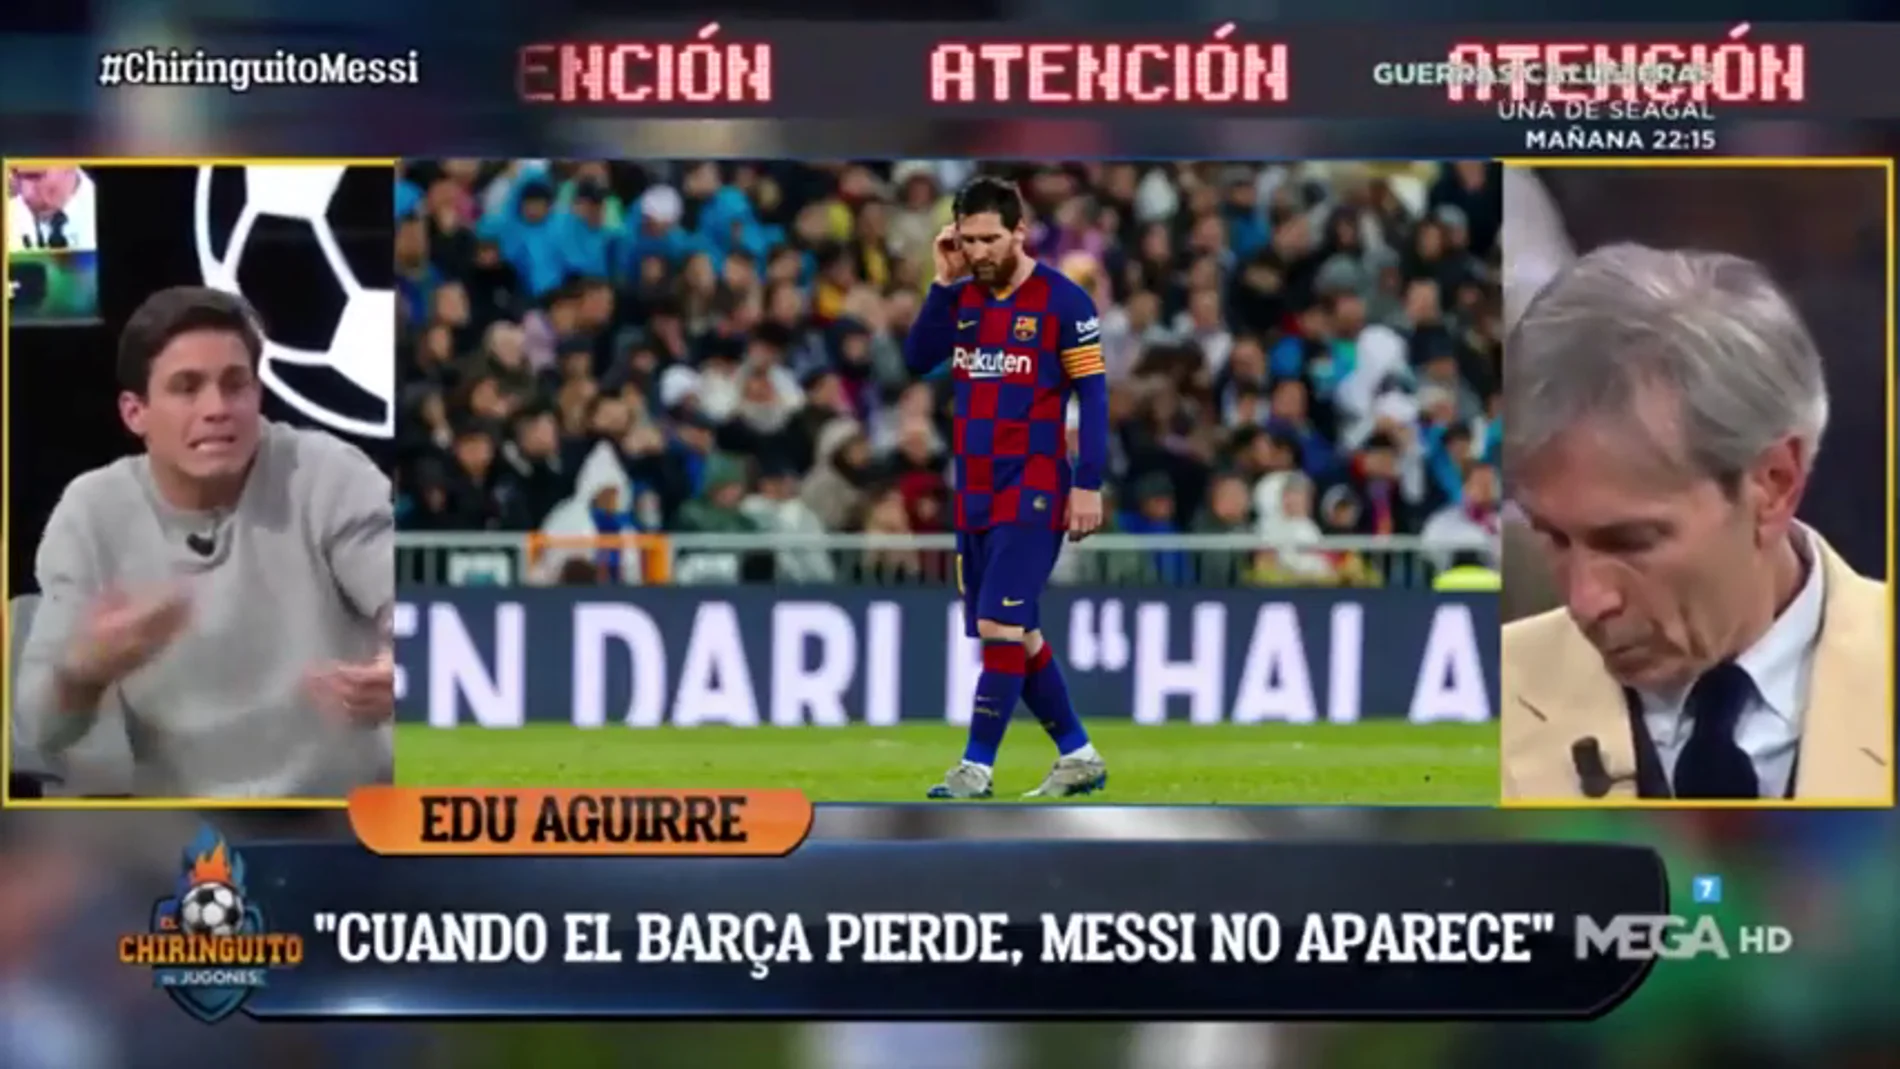 Edu Aguirre lo tiene claro: "El declive de Messi ha empezado"